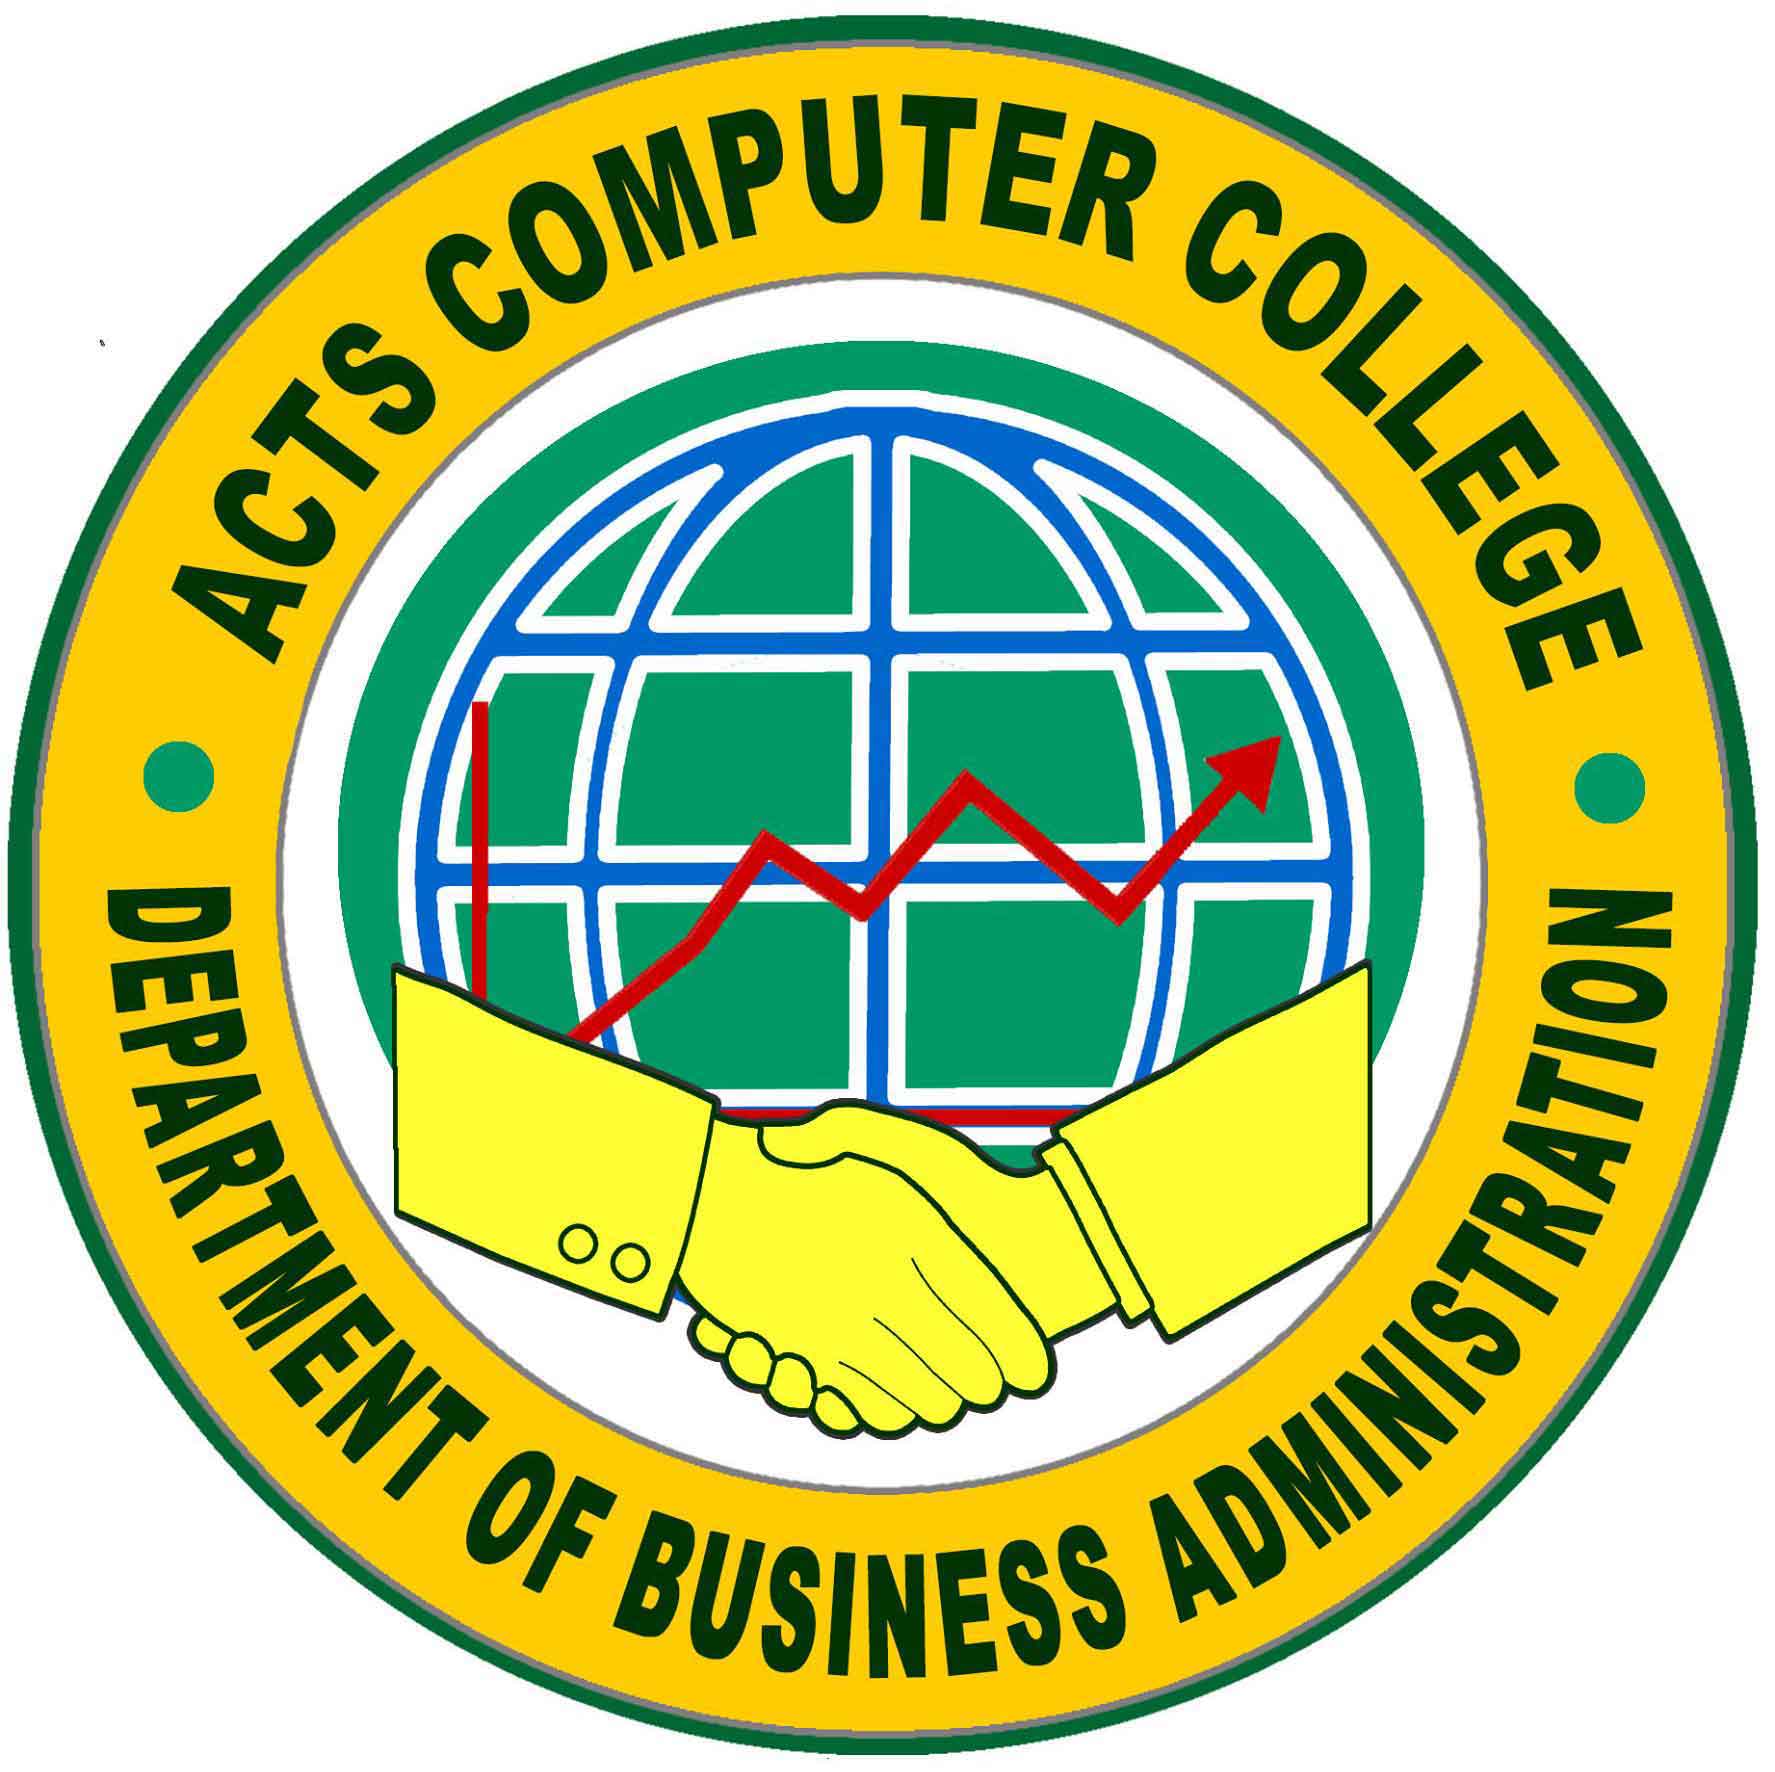 Department of Computer Studies